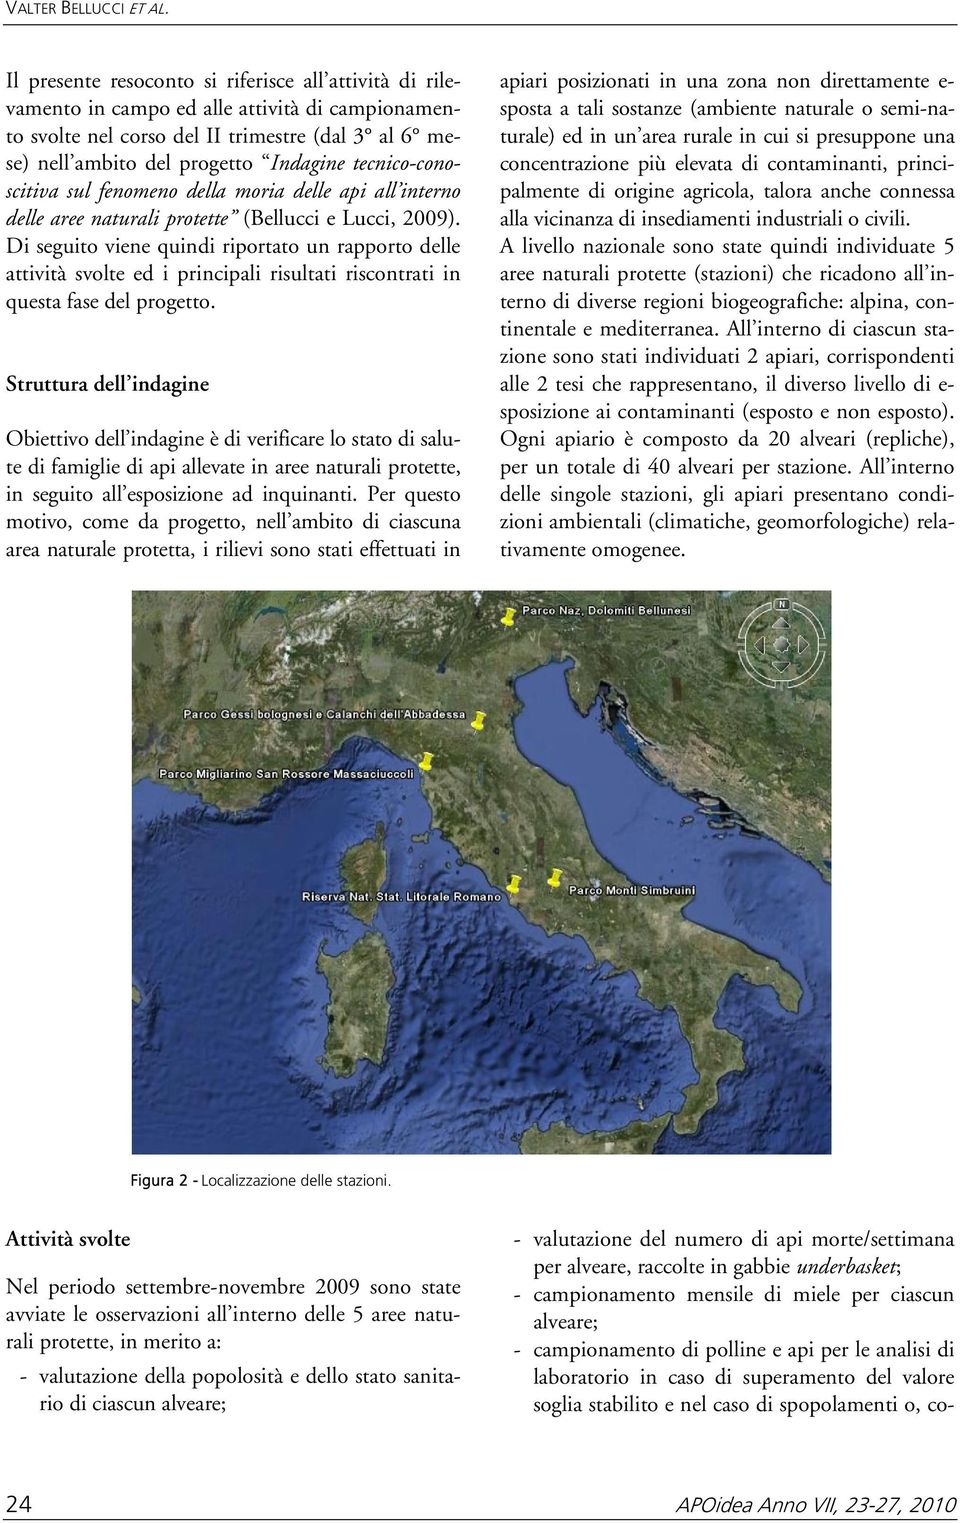 tecnico-conoscitiva sul fenomeno della moria delle api all interno delle aree naturali protette (Bellucci e Lucci, 2009).